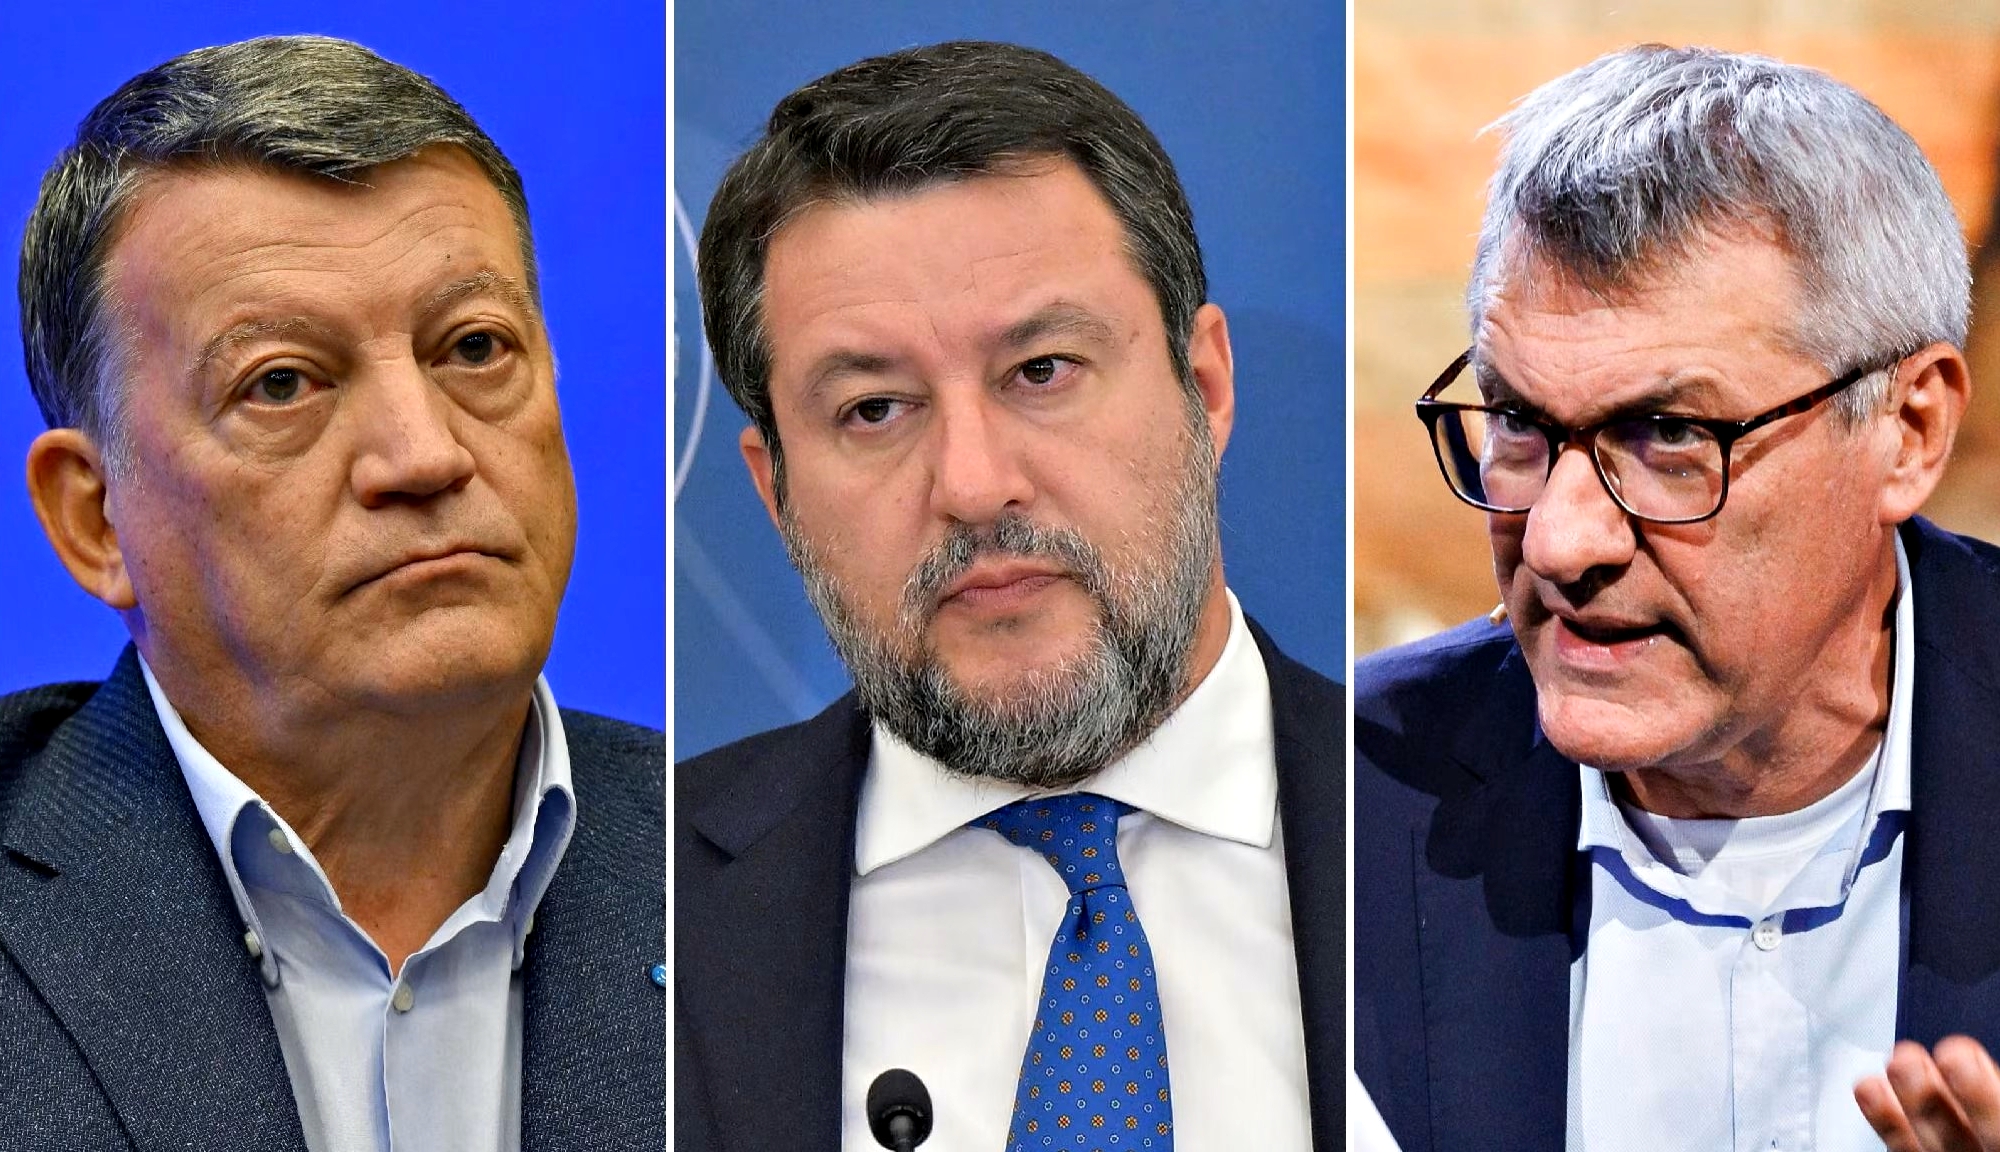 Sciopero, Cgil e Uil non mollano e Salvini procede con precettazione: stop ridotto a 4 ore